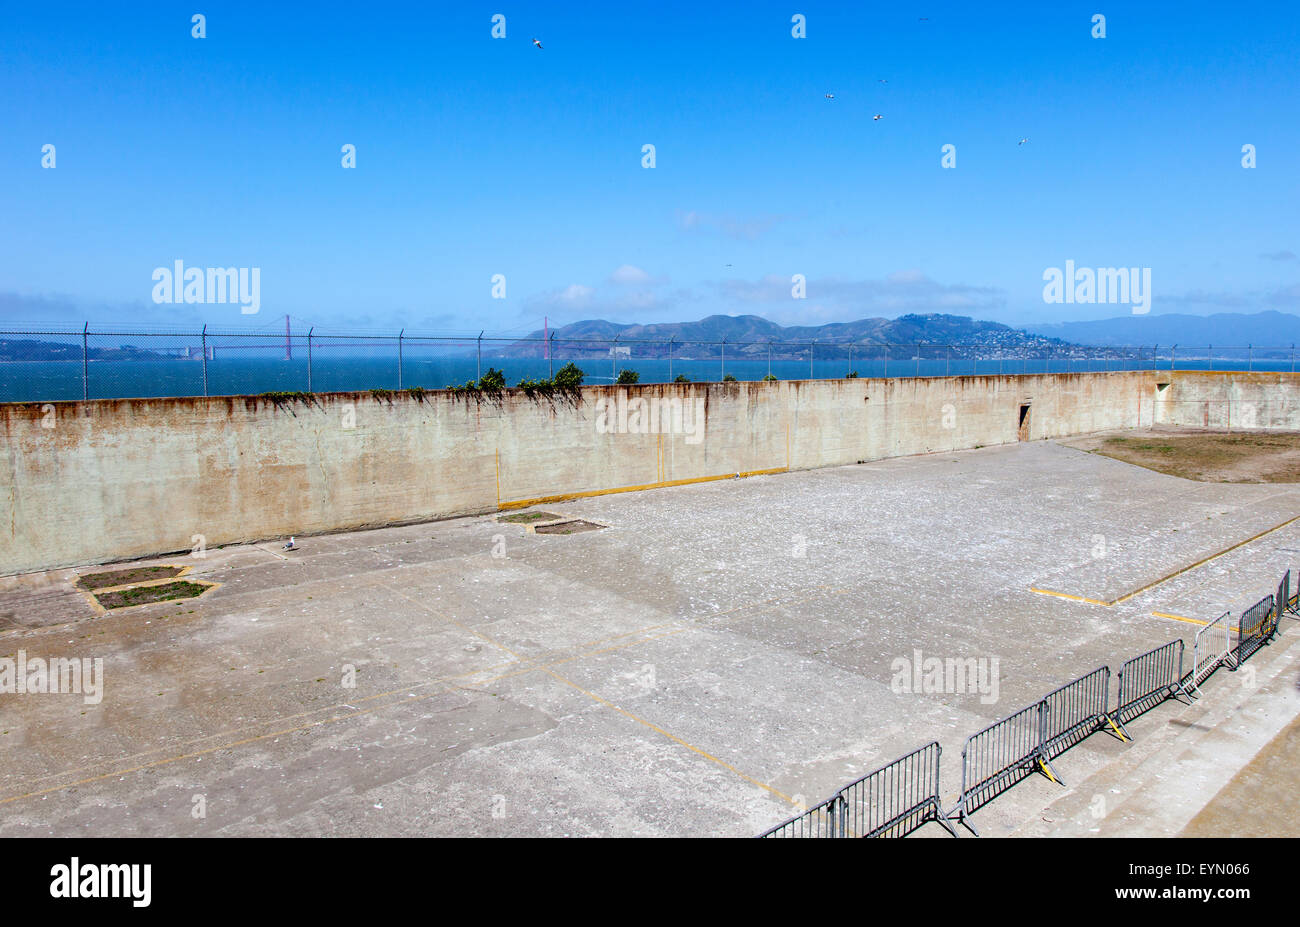 La cour de récréation à l'Alcatraz, San Francisco, USA Banque D'Images